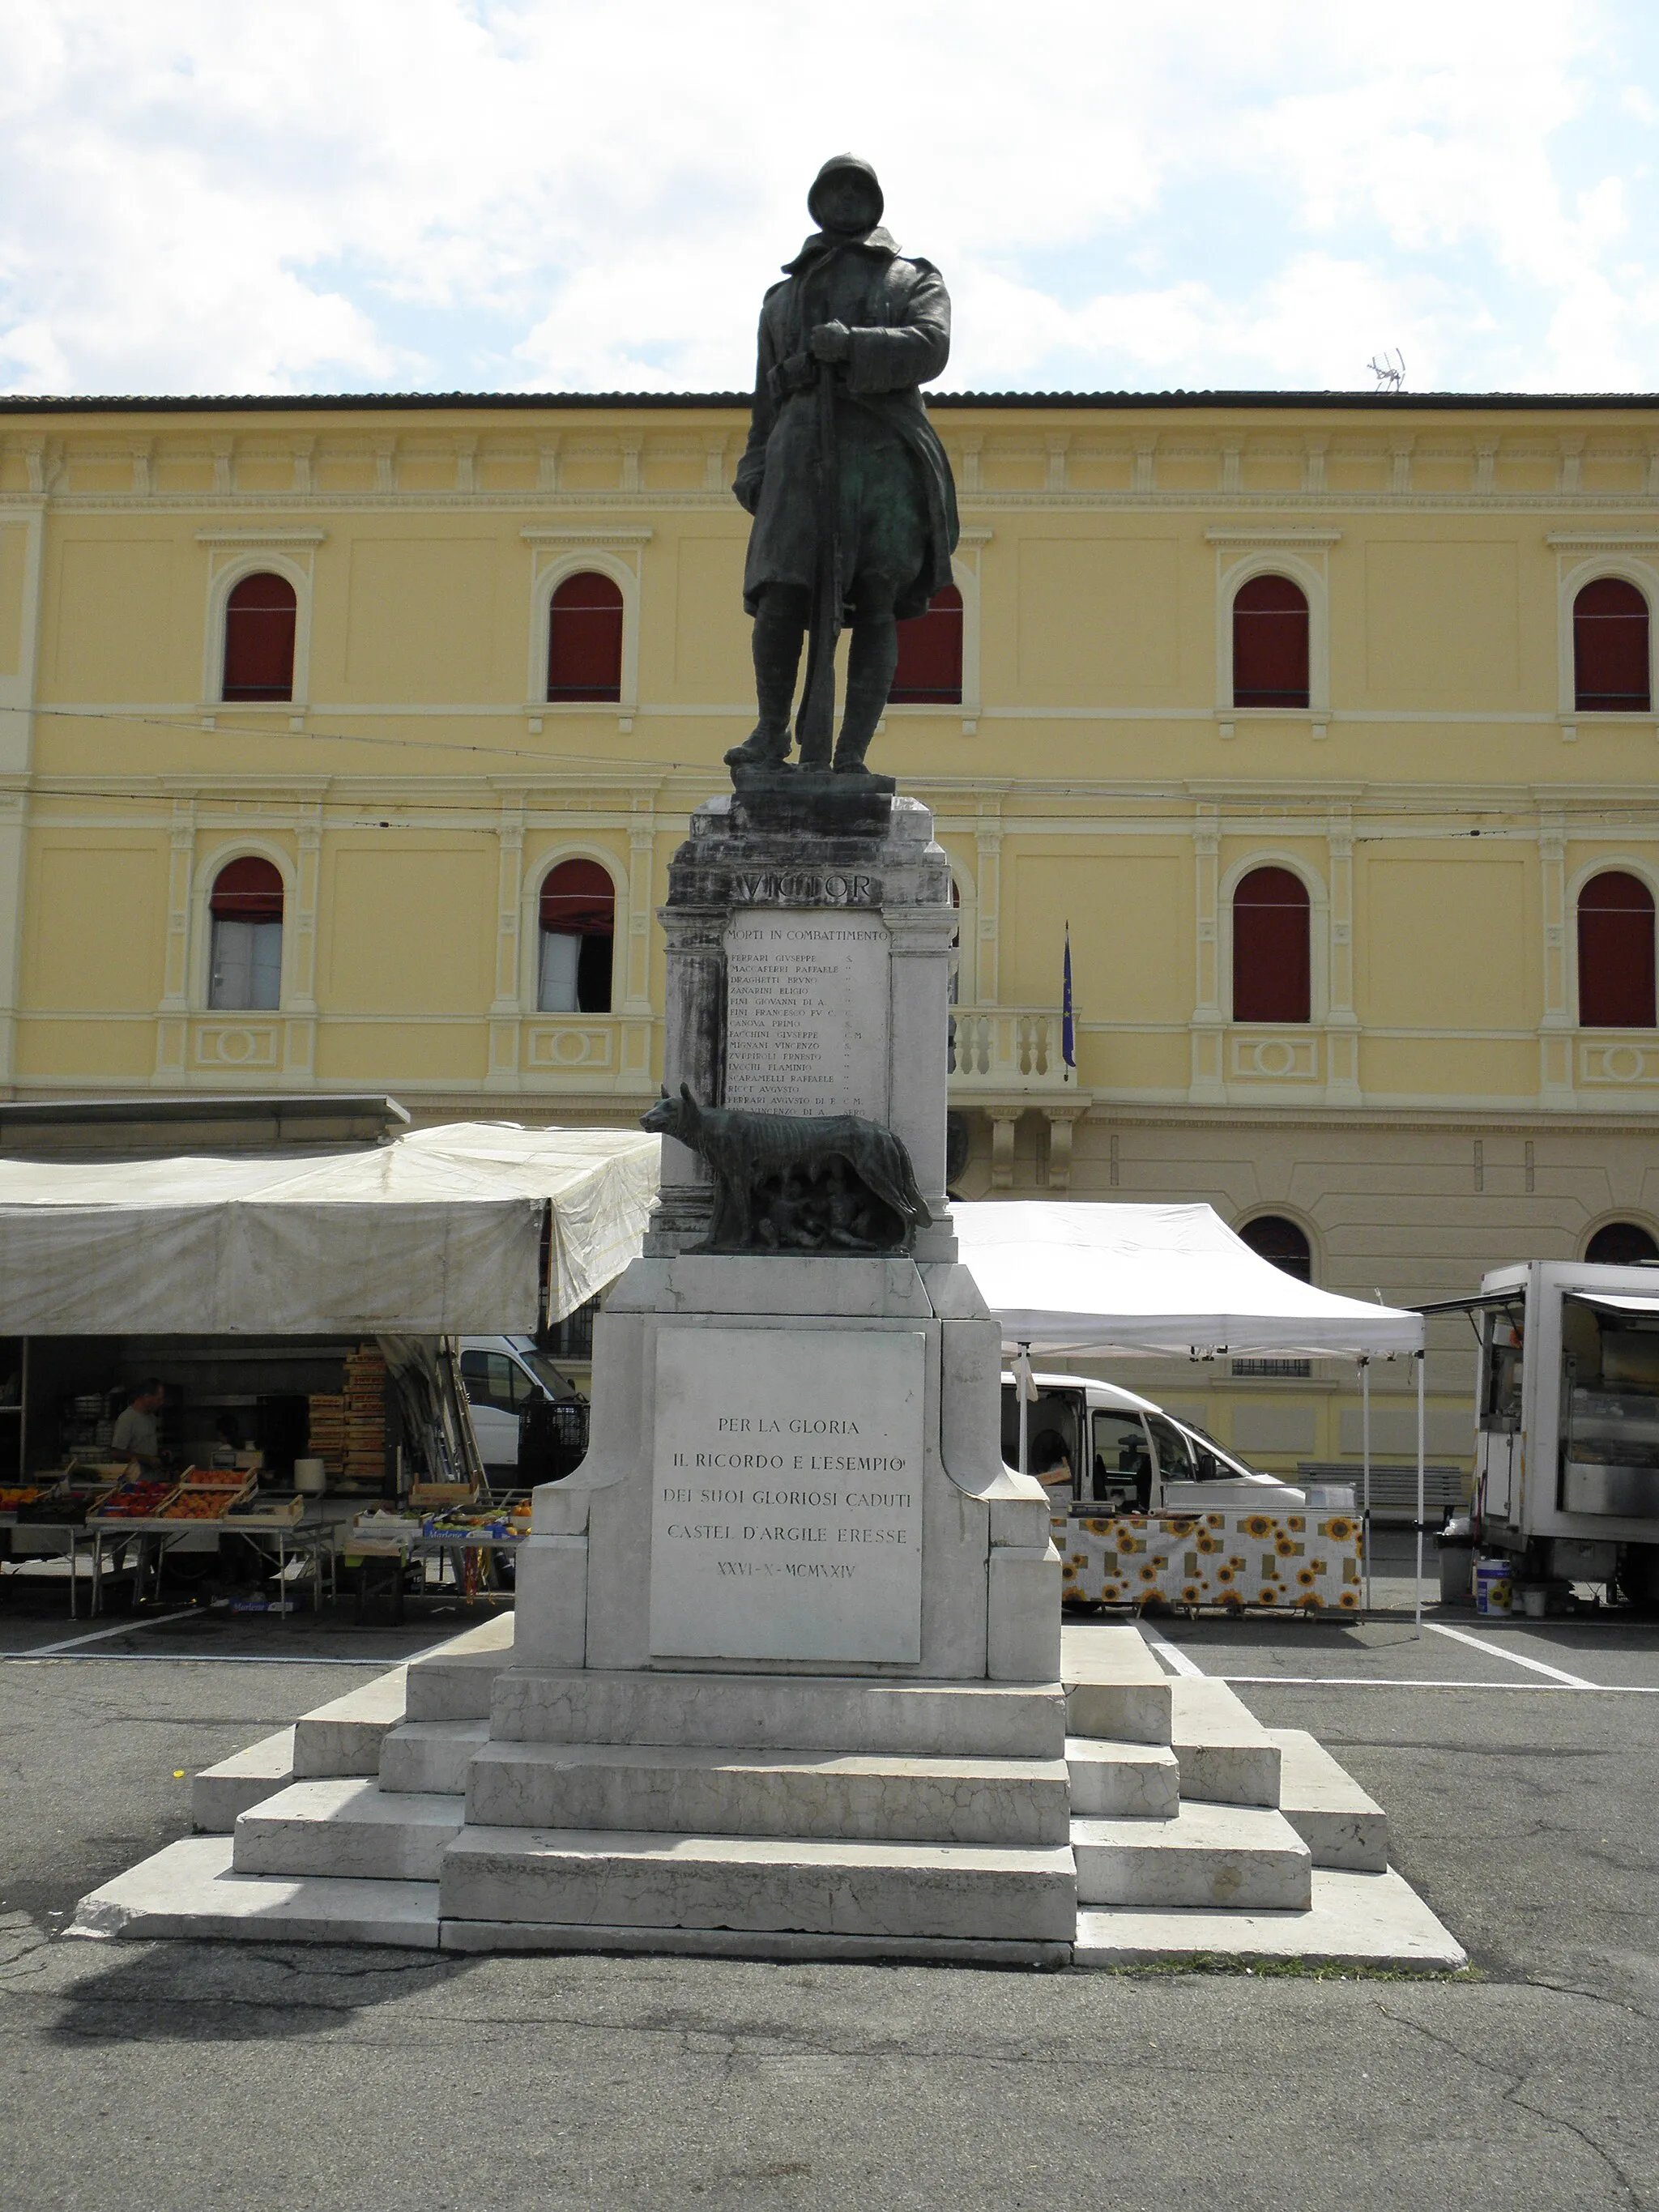 Photo showing: Castello d'Argile, il monumento realizzato da Armando Minguzzi  (1884 - 1940) che commemora i caduti della prima e seconda guerra mondiale posto al centro di Piazza Gadani.